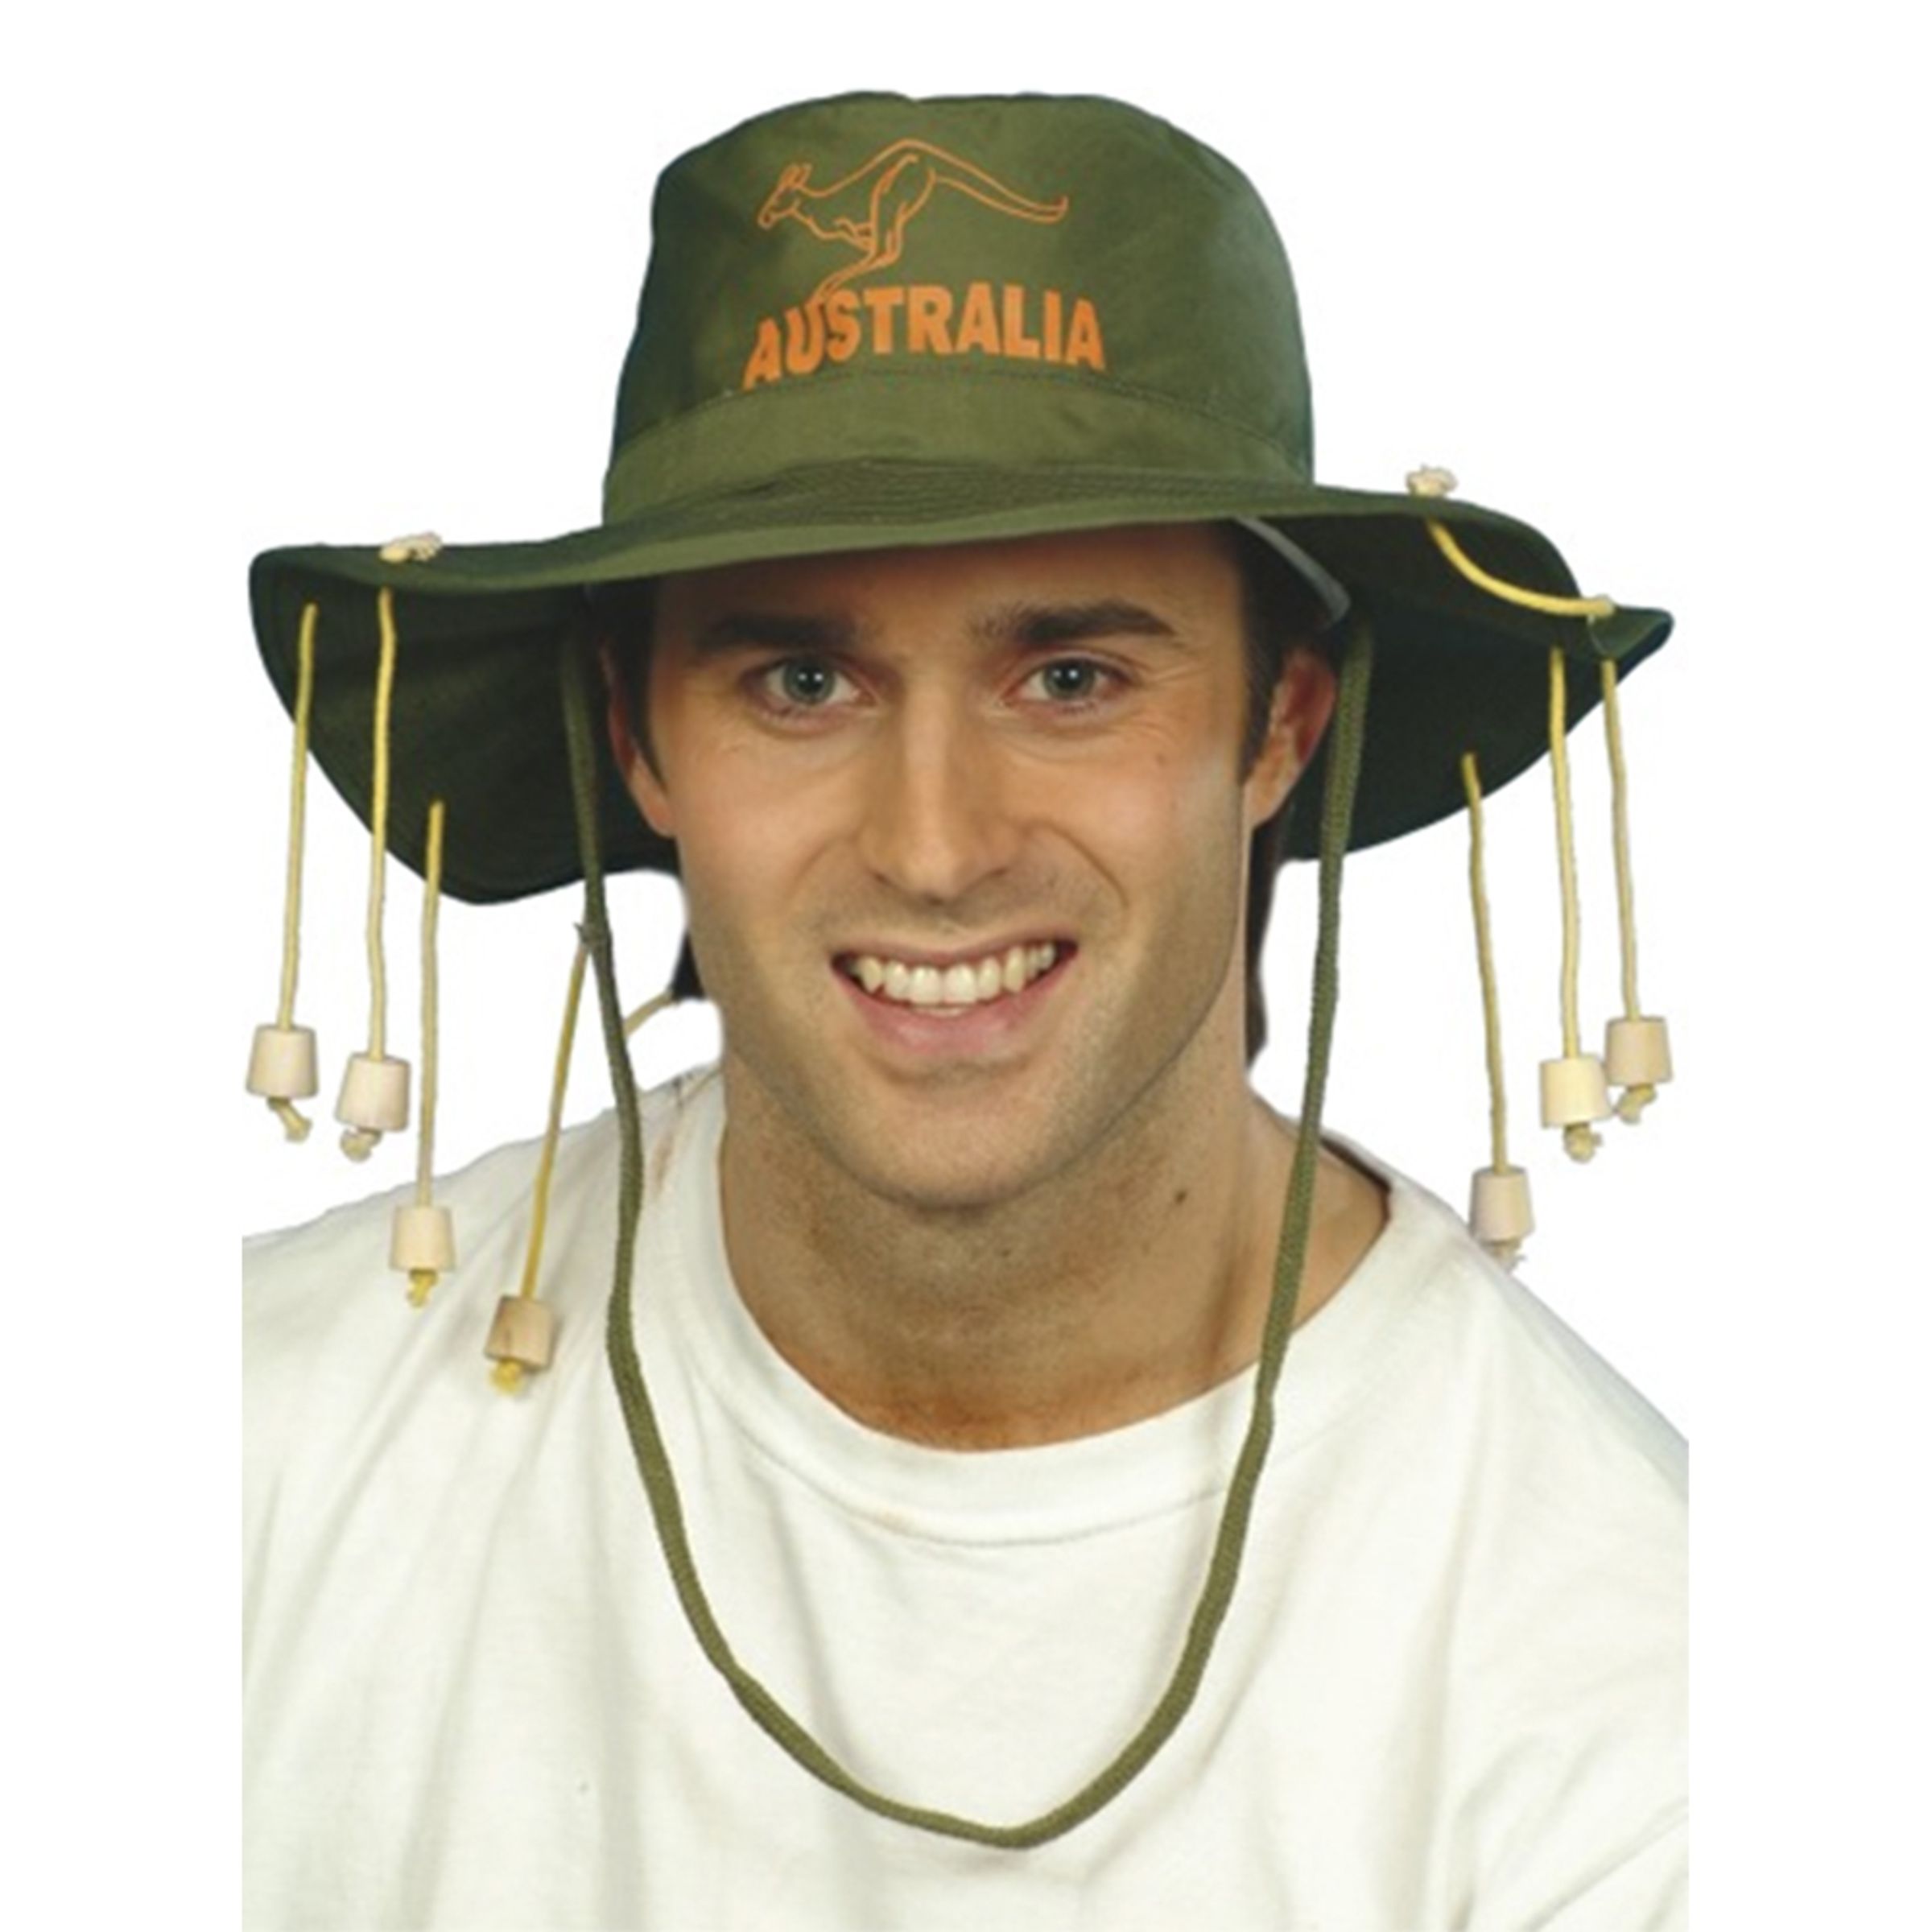 Australisk Hatt - One size